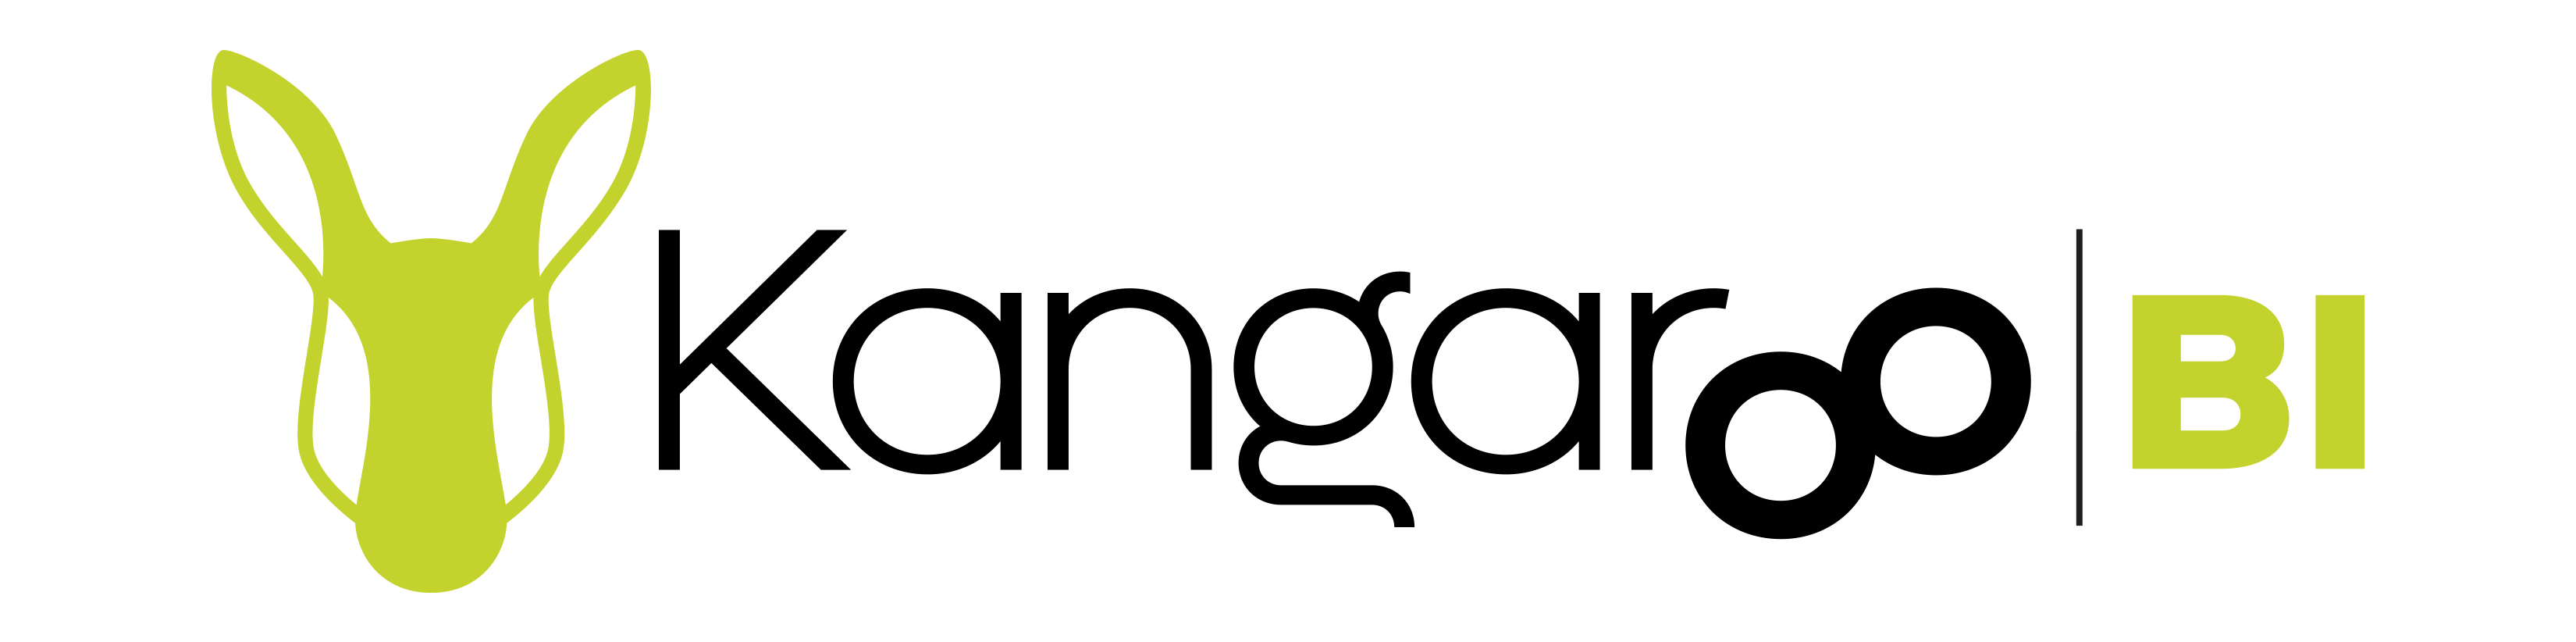 Product 1 Logo